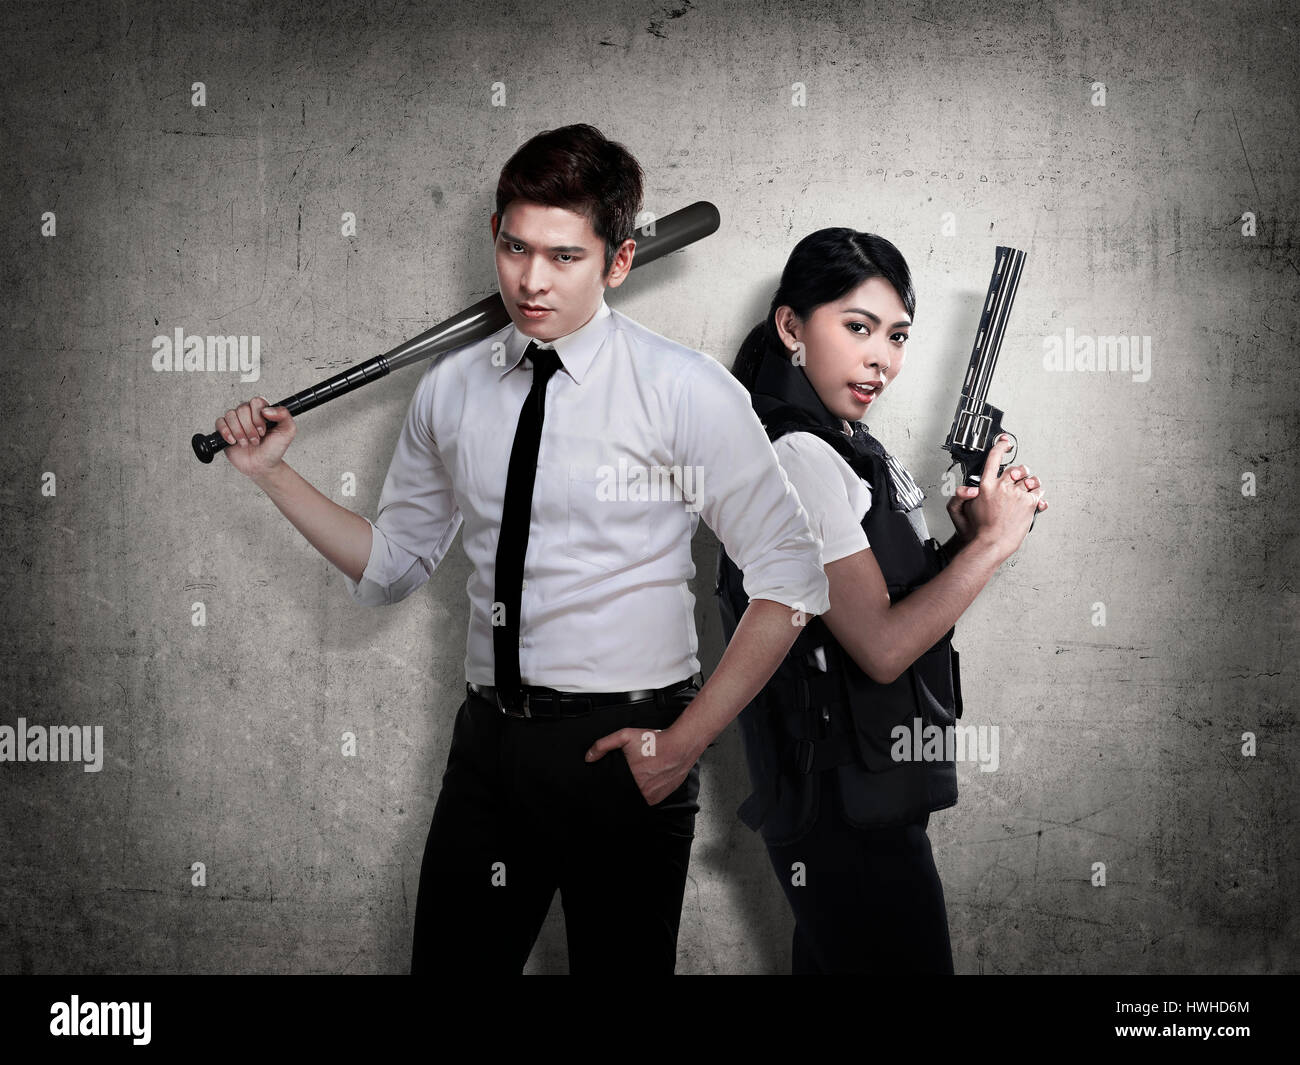 El hombre y la mujer policía dispuestos a combatir la delincuencia Foto de stock